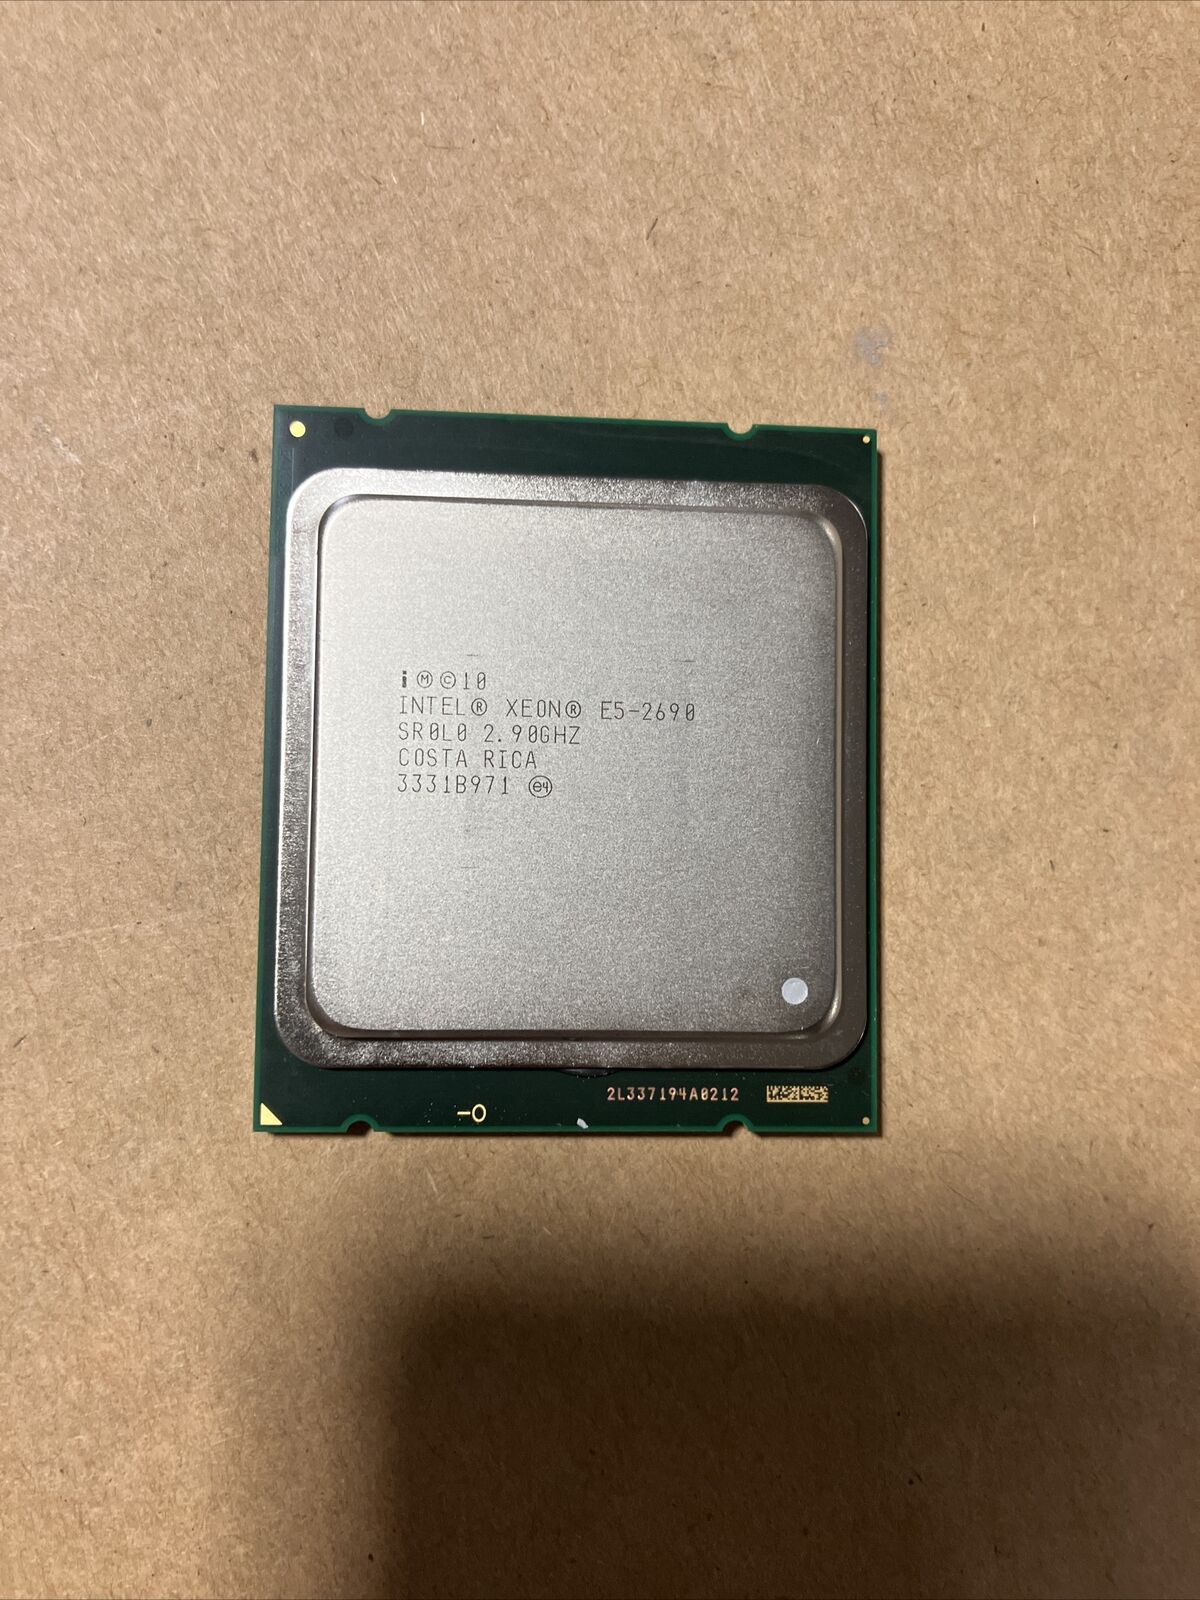 Intel Xeon E5-2690 8-Core 2.90GHz LGA2011 Server Processor CPU SR0L0